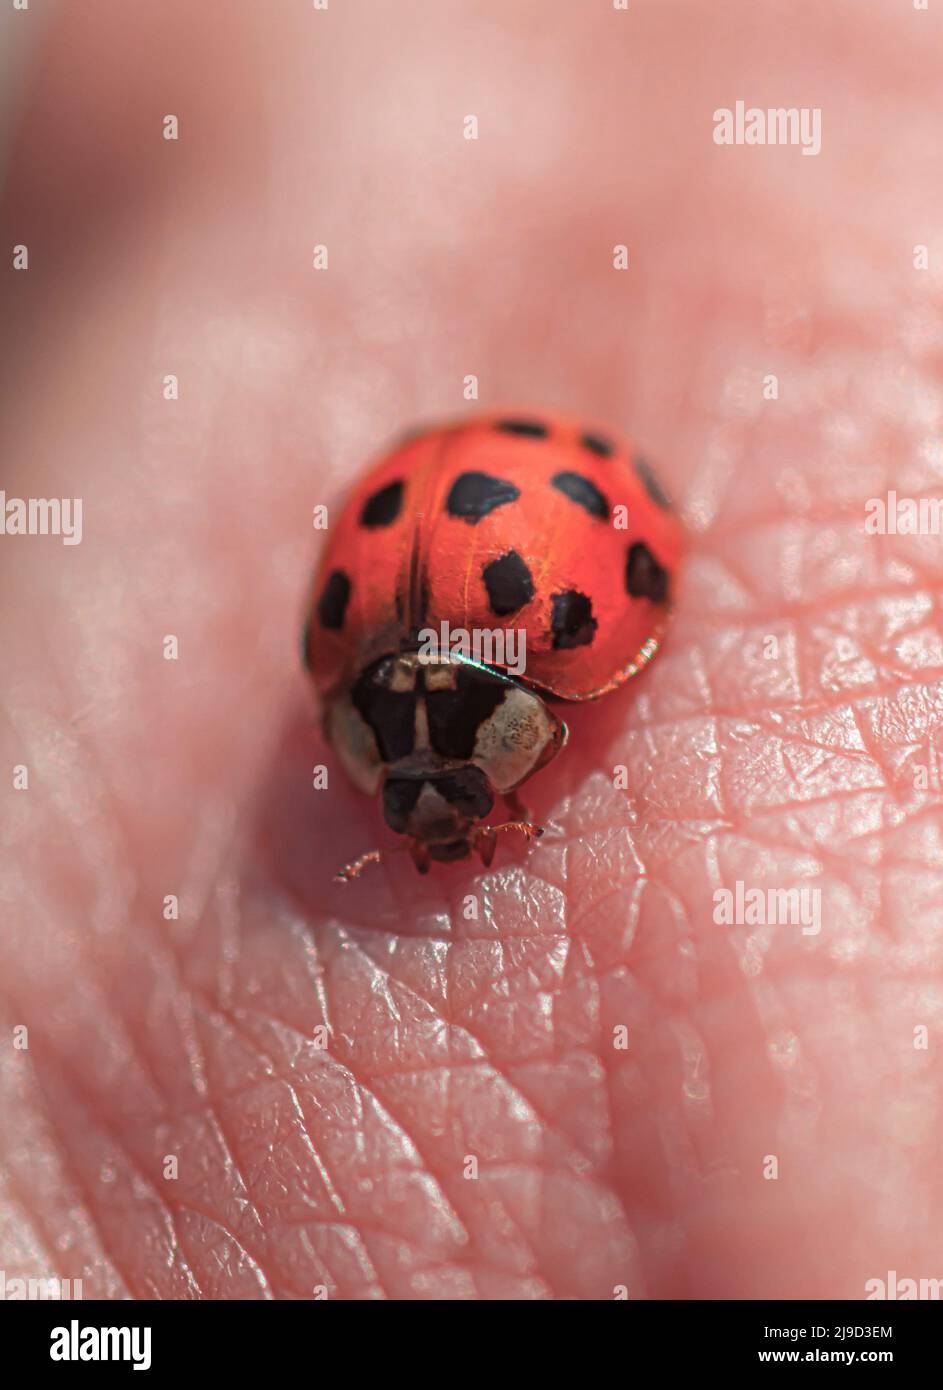 One ladybug sitting on human skin. Stock Photo